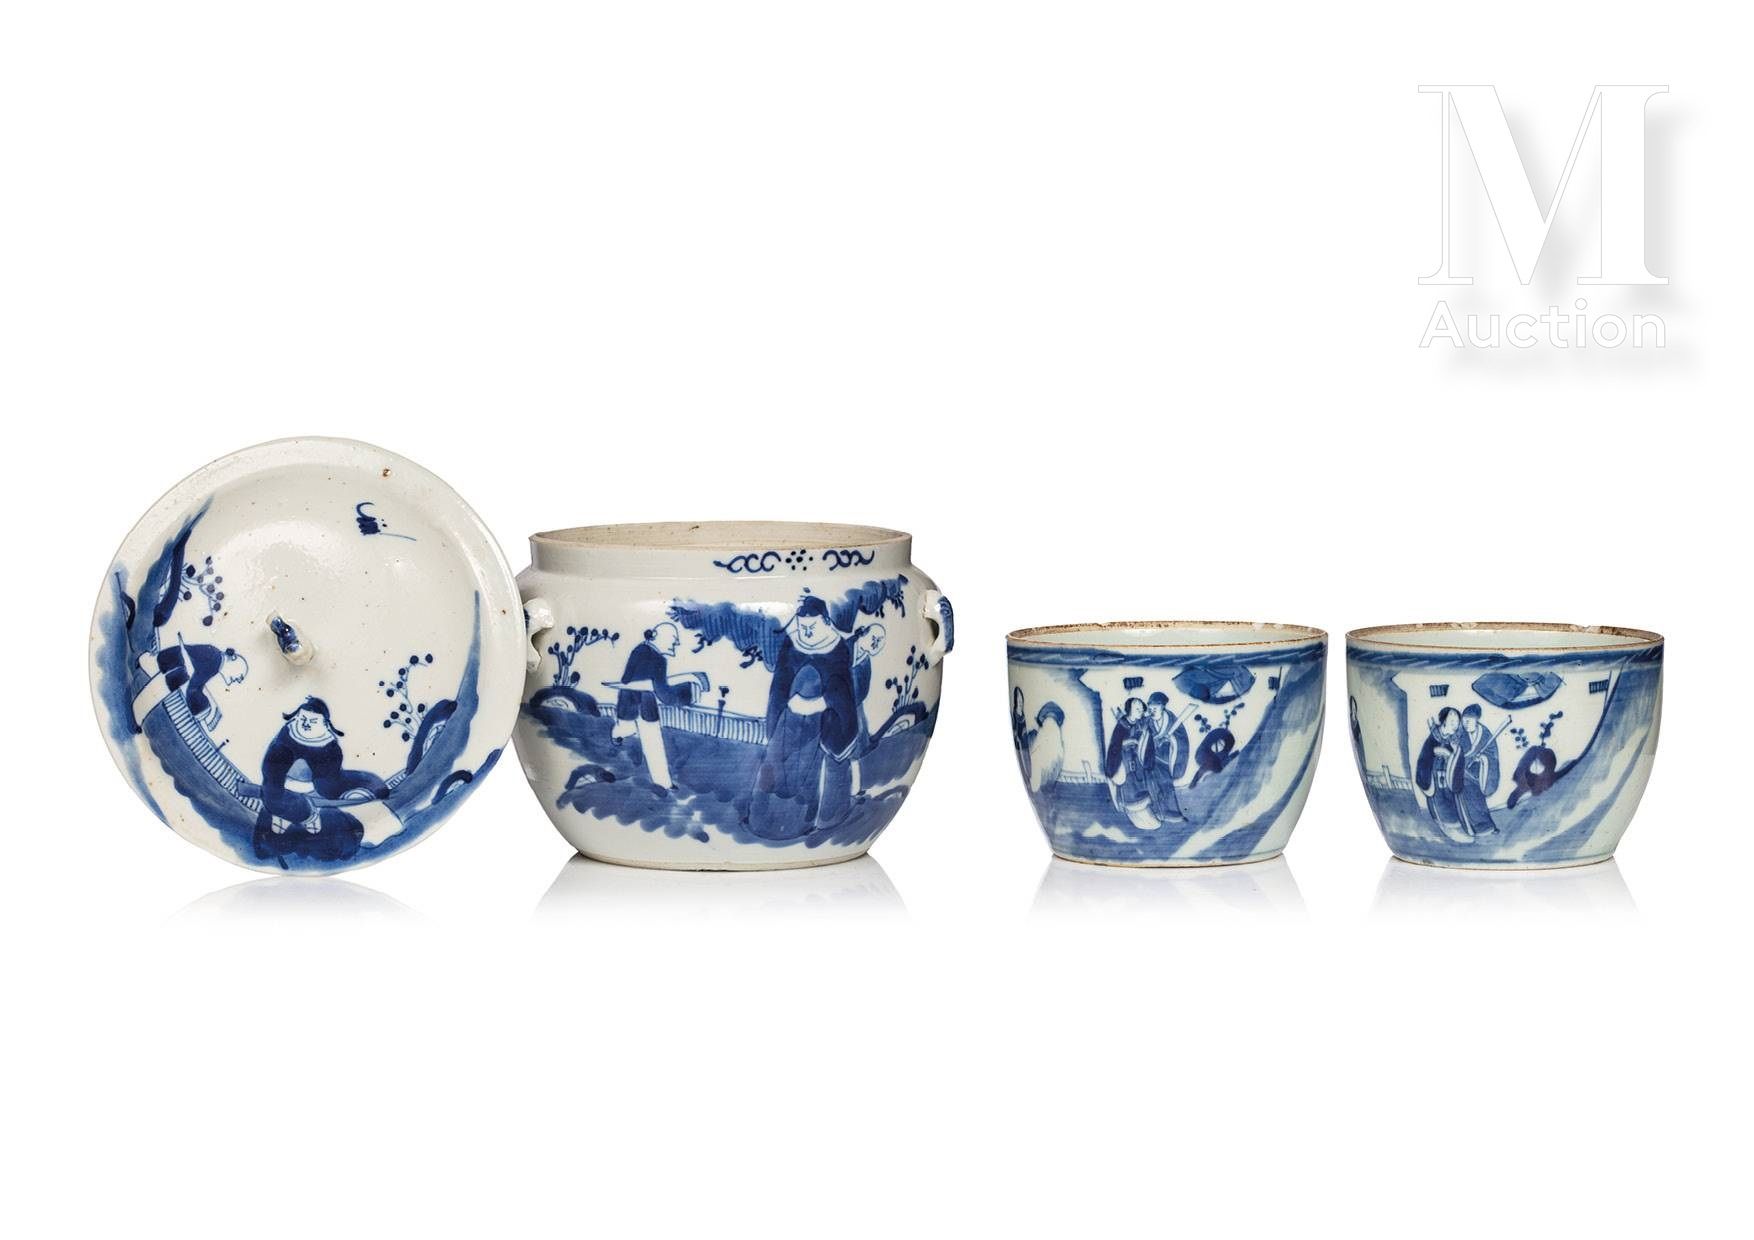 CHINE, XIXe/XXe siècle, Ensemble de trois porcelaines decorato con figure blu e &hellip;